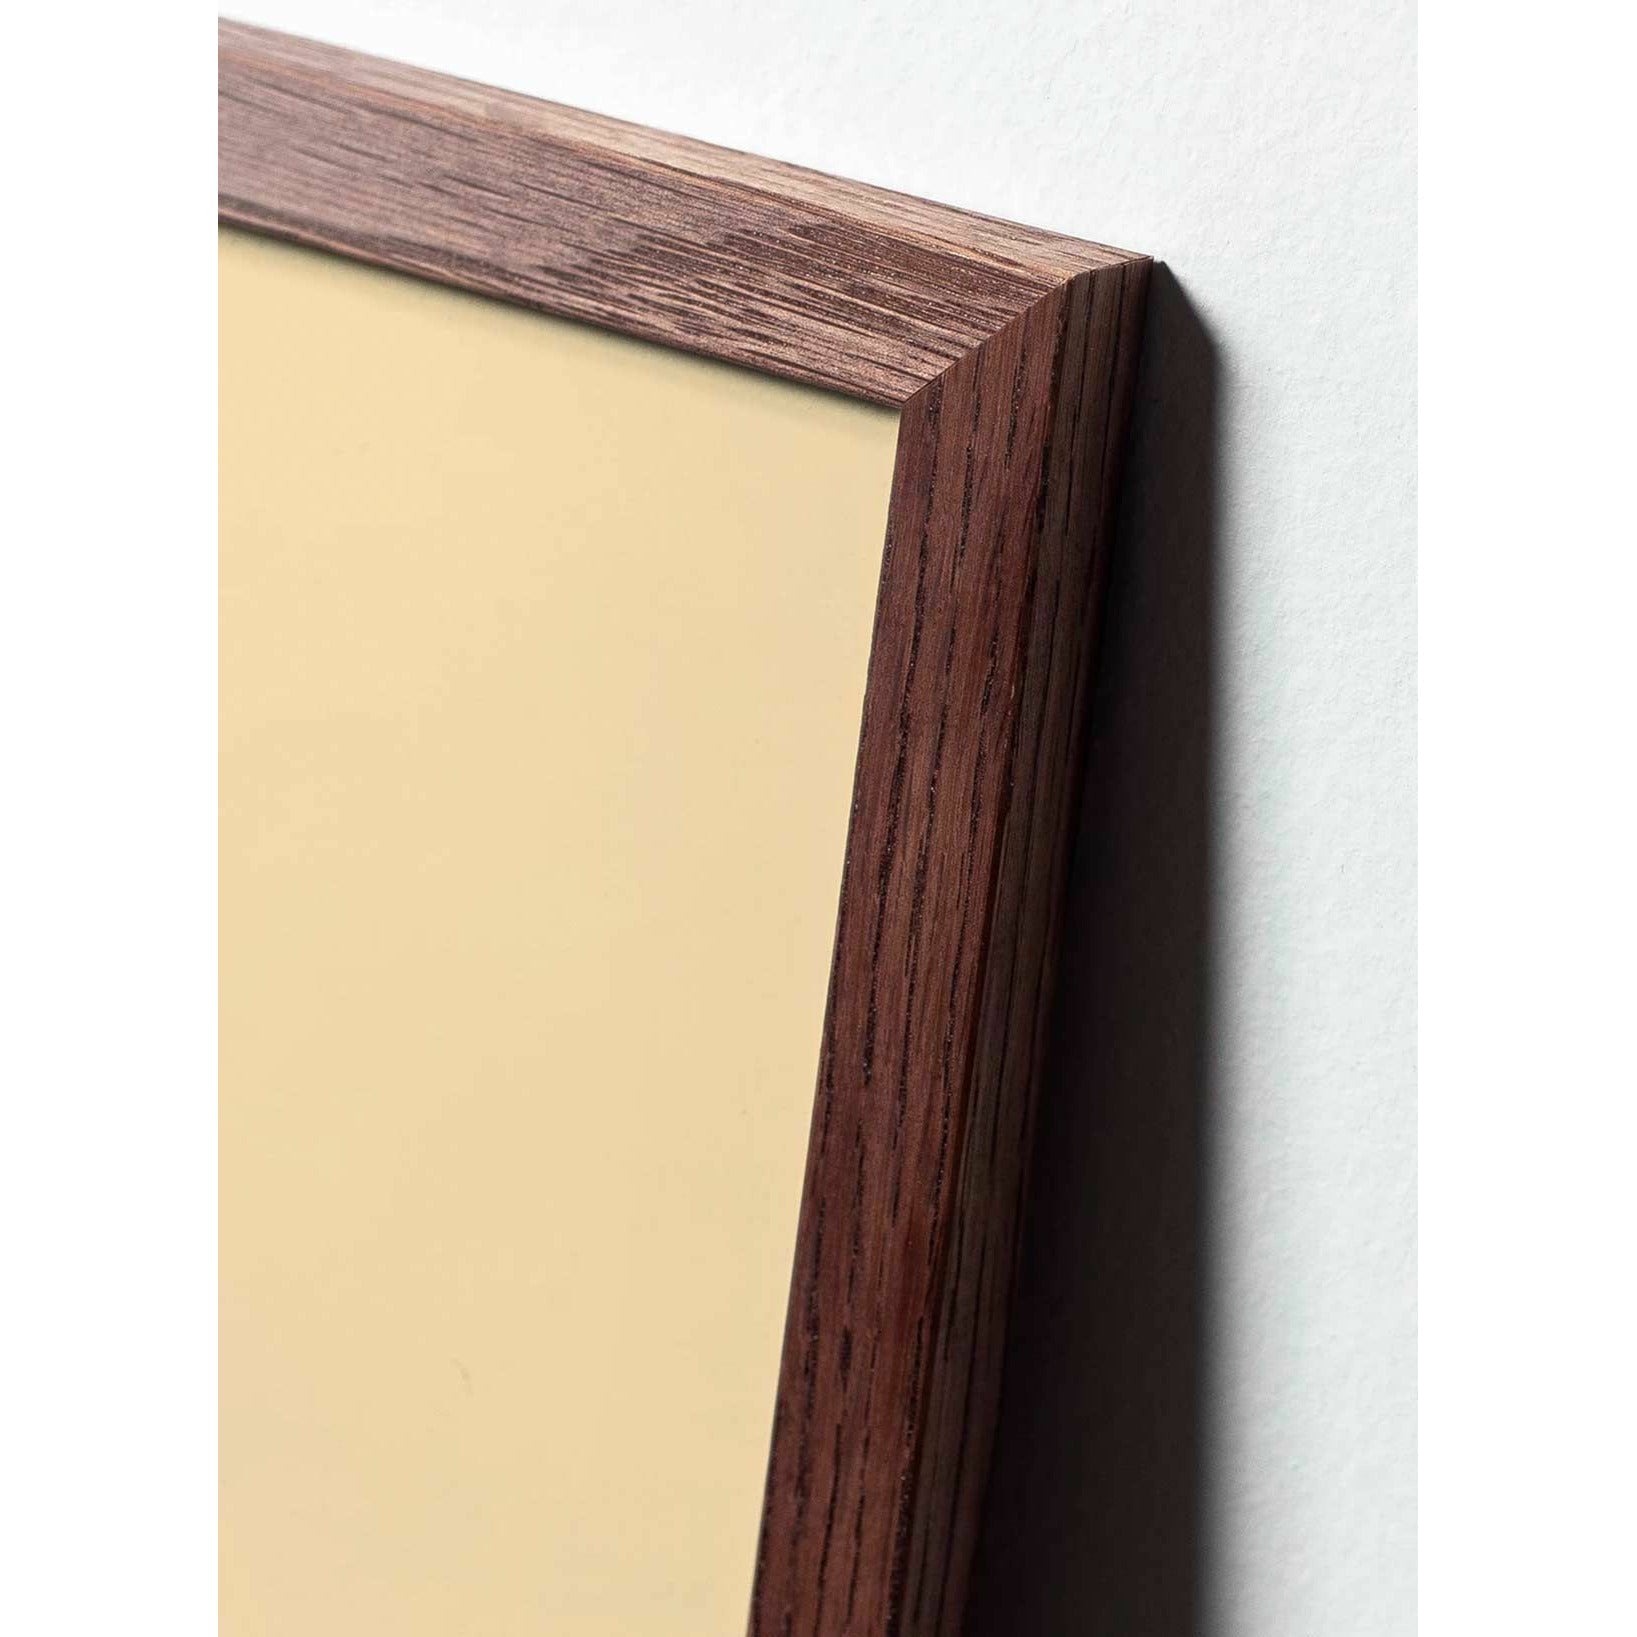 Affiche de la ligne d'oeuf imaginaire, cadre en bois foncé A5, fond blanc